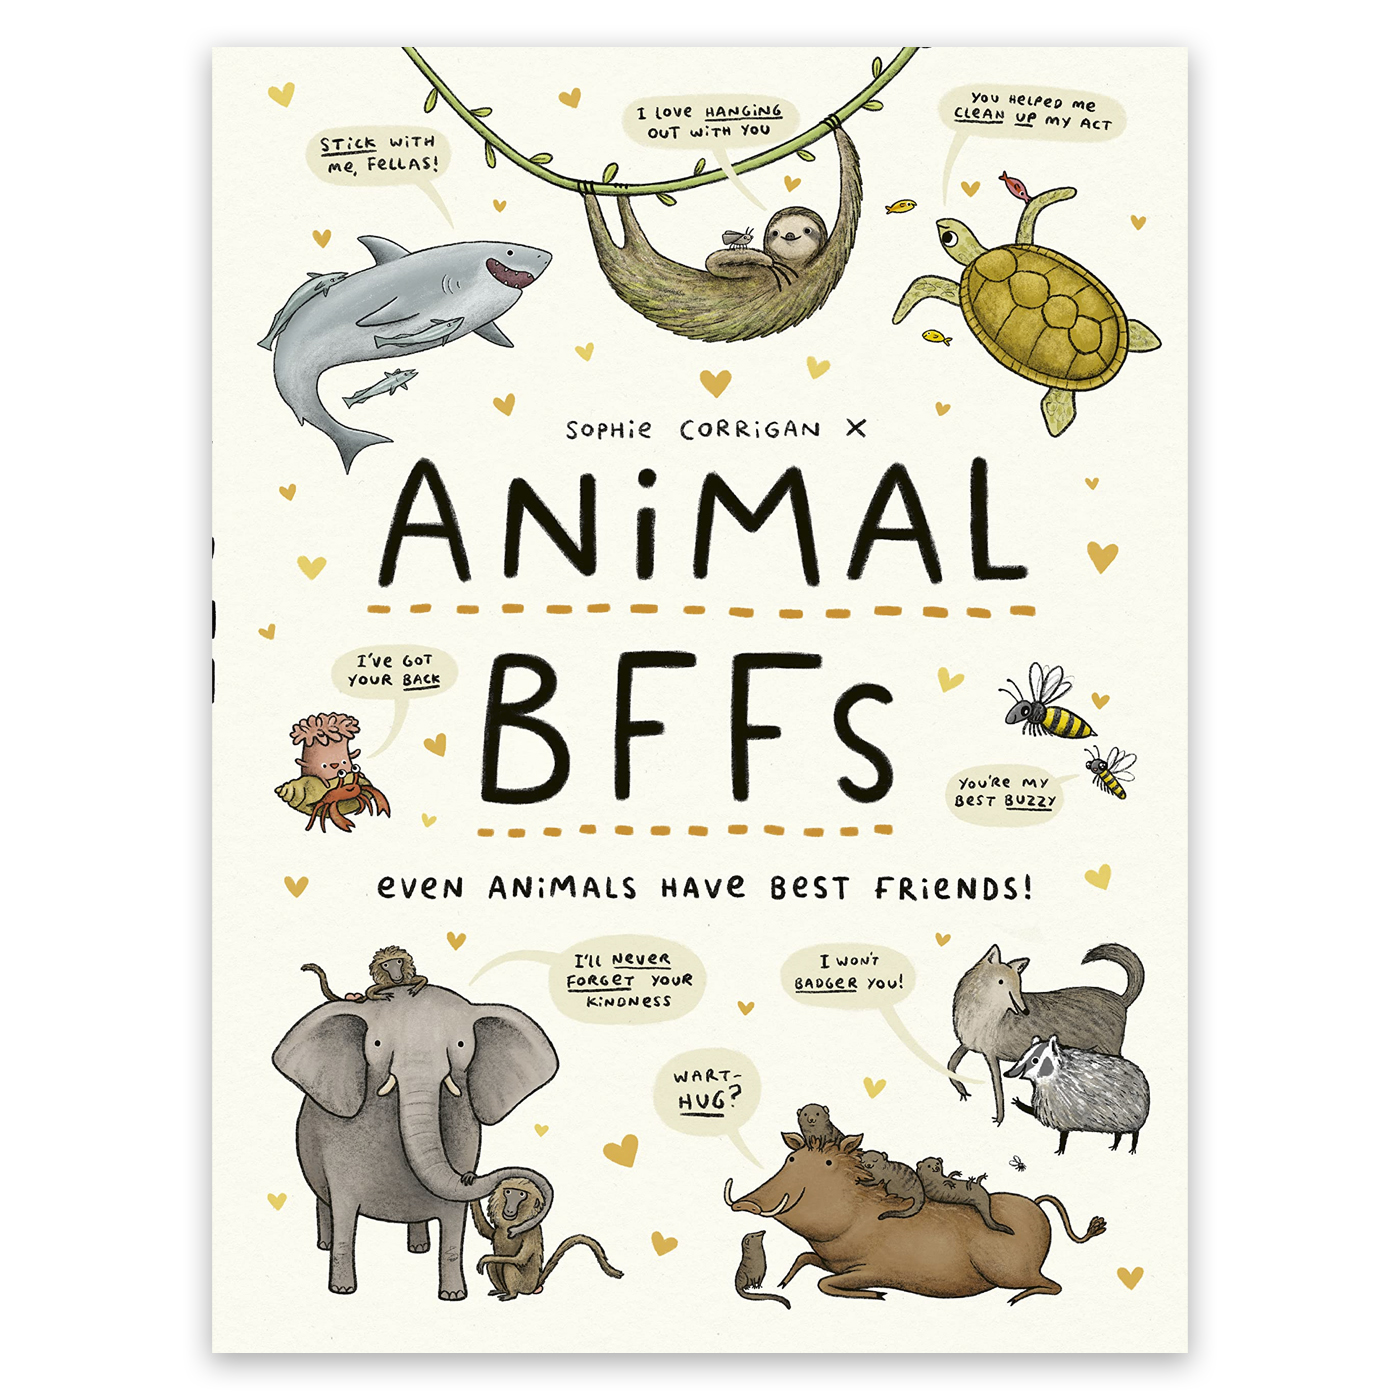  Animal Bffs: Even Animals Have Best Friends!